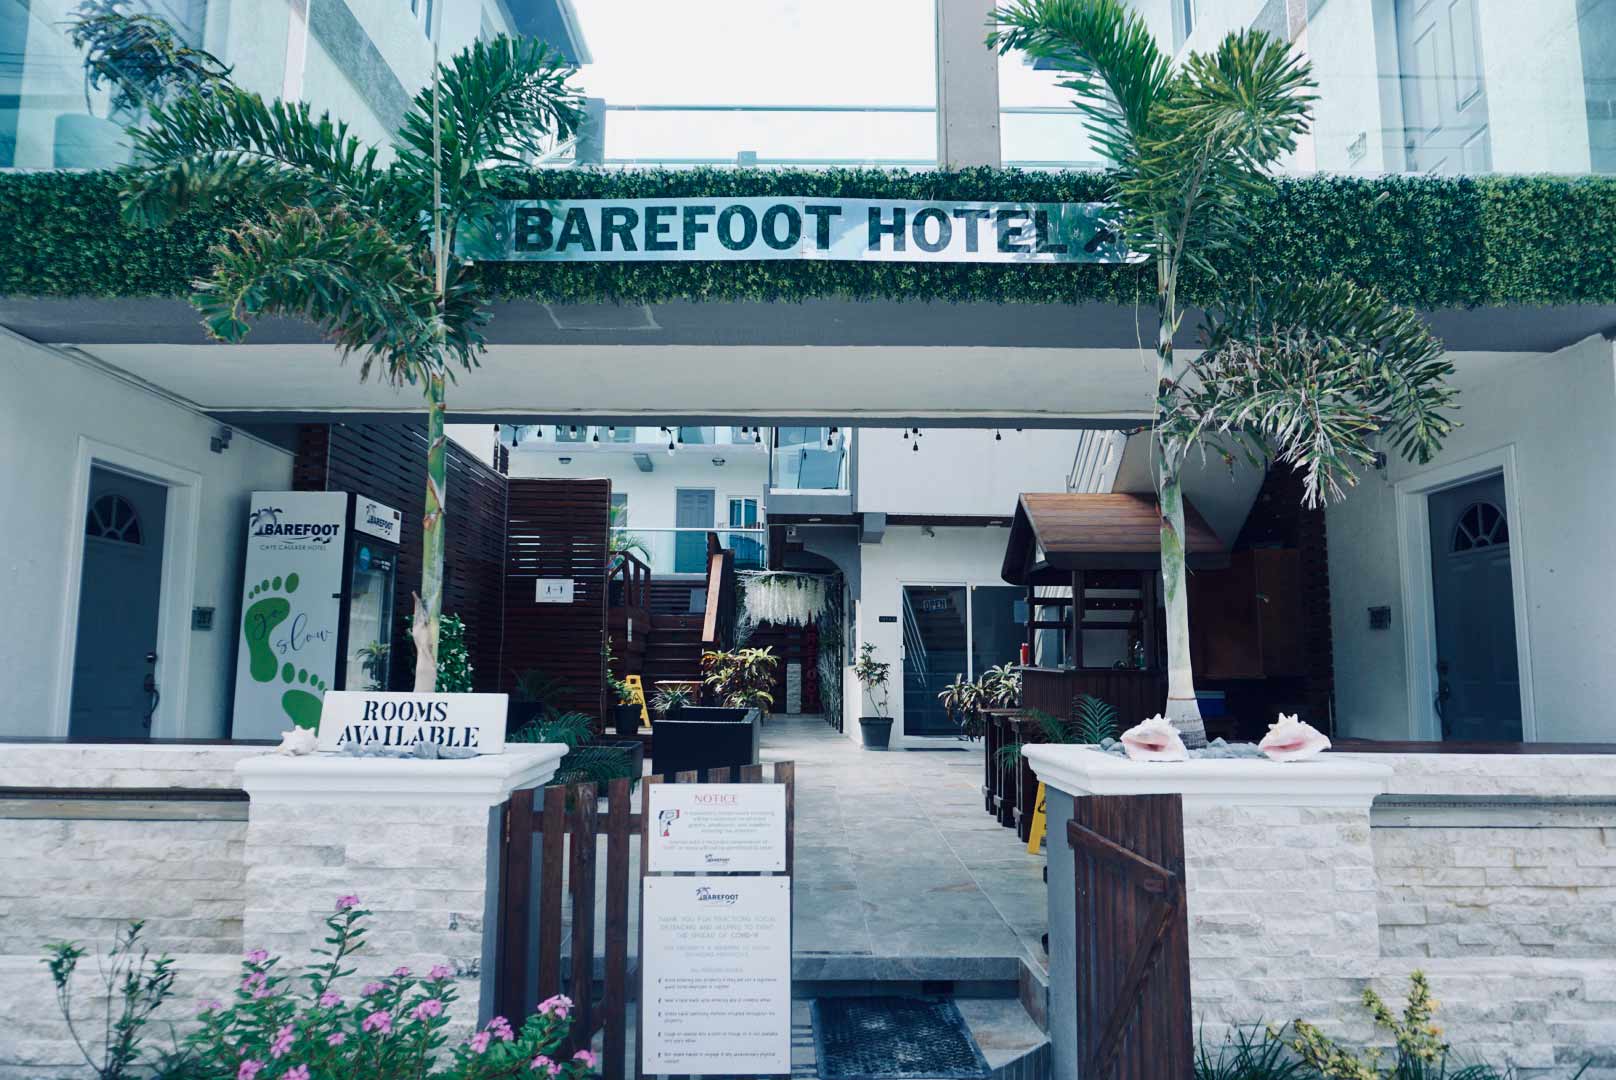 Barefoot-Caye-Caulker-Hotel-1.jpg